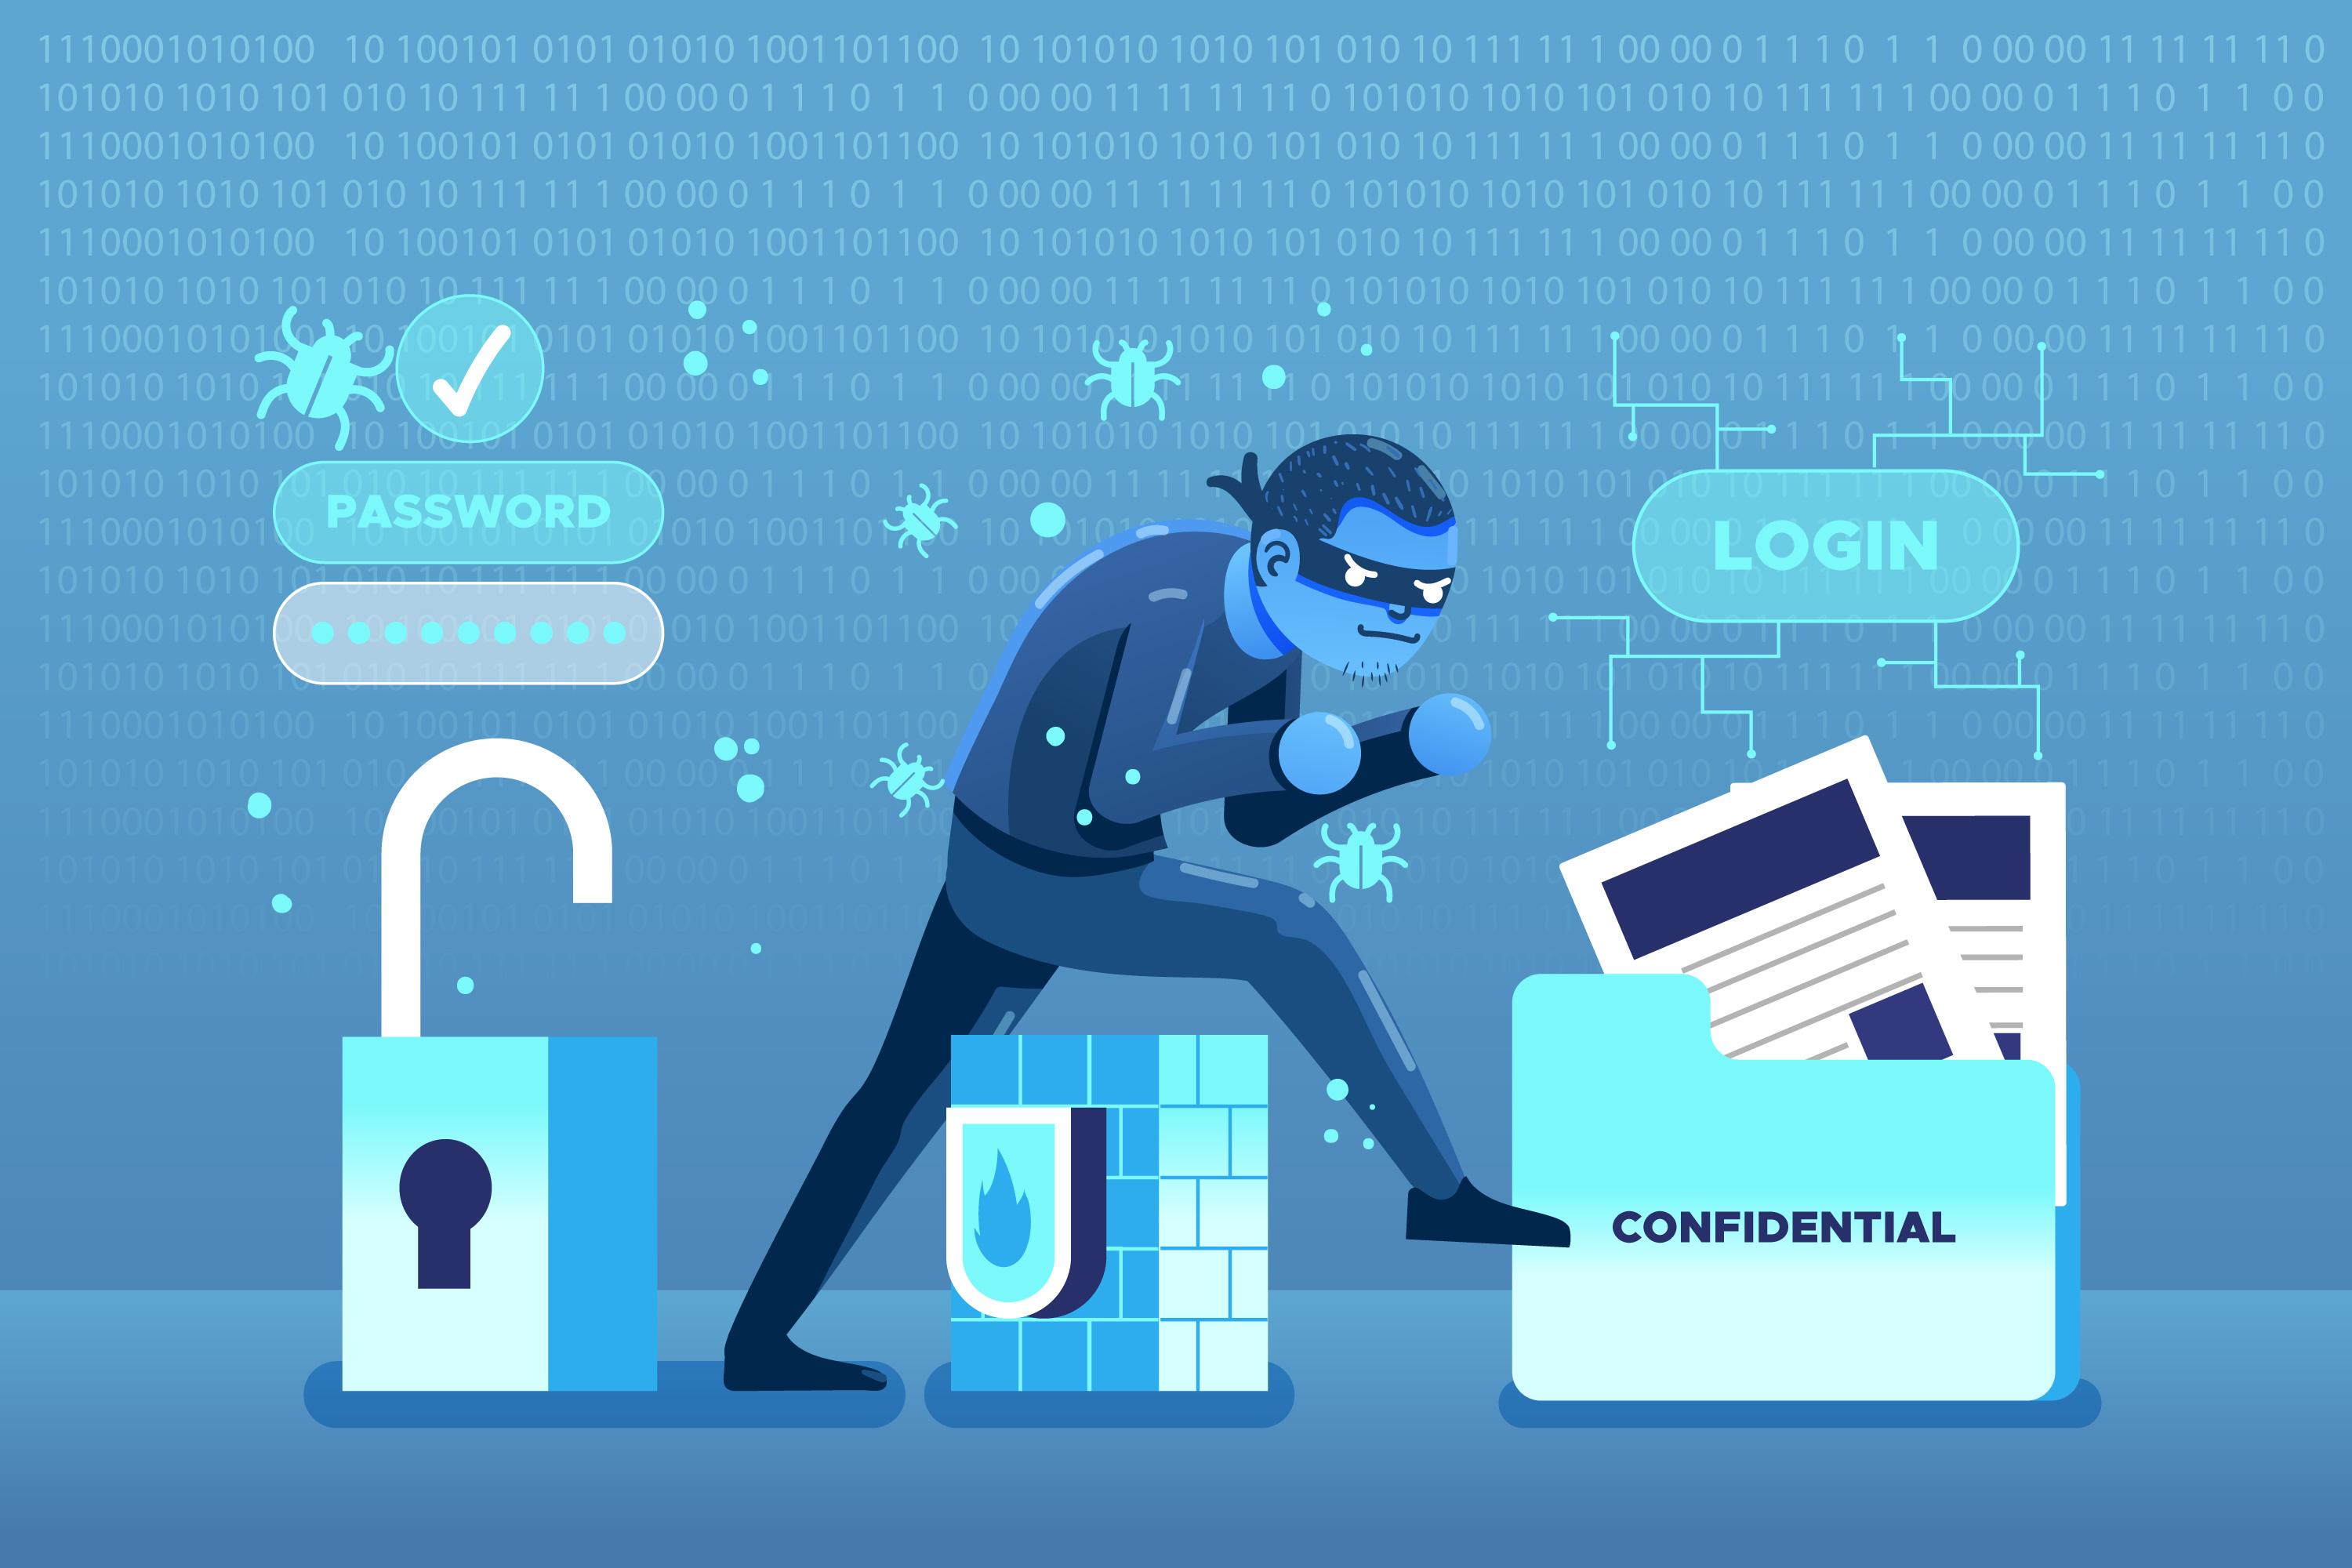 El malware y el ransomware son factores de riesgo para nuestros datos, que sin una copia de respaldo se perderían. (Freepik)